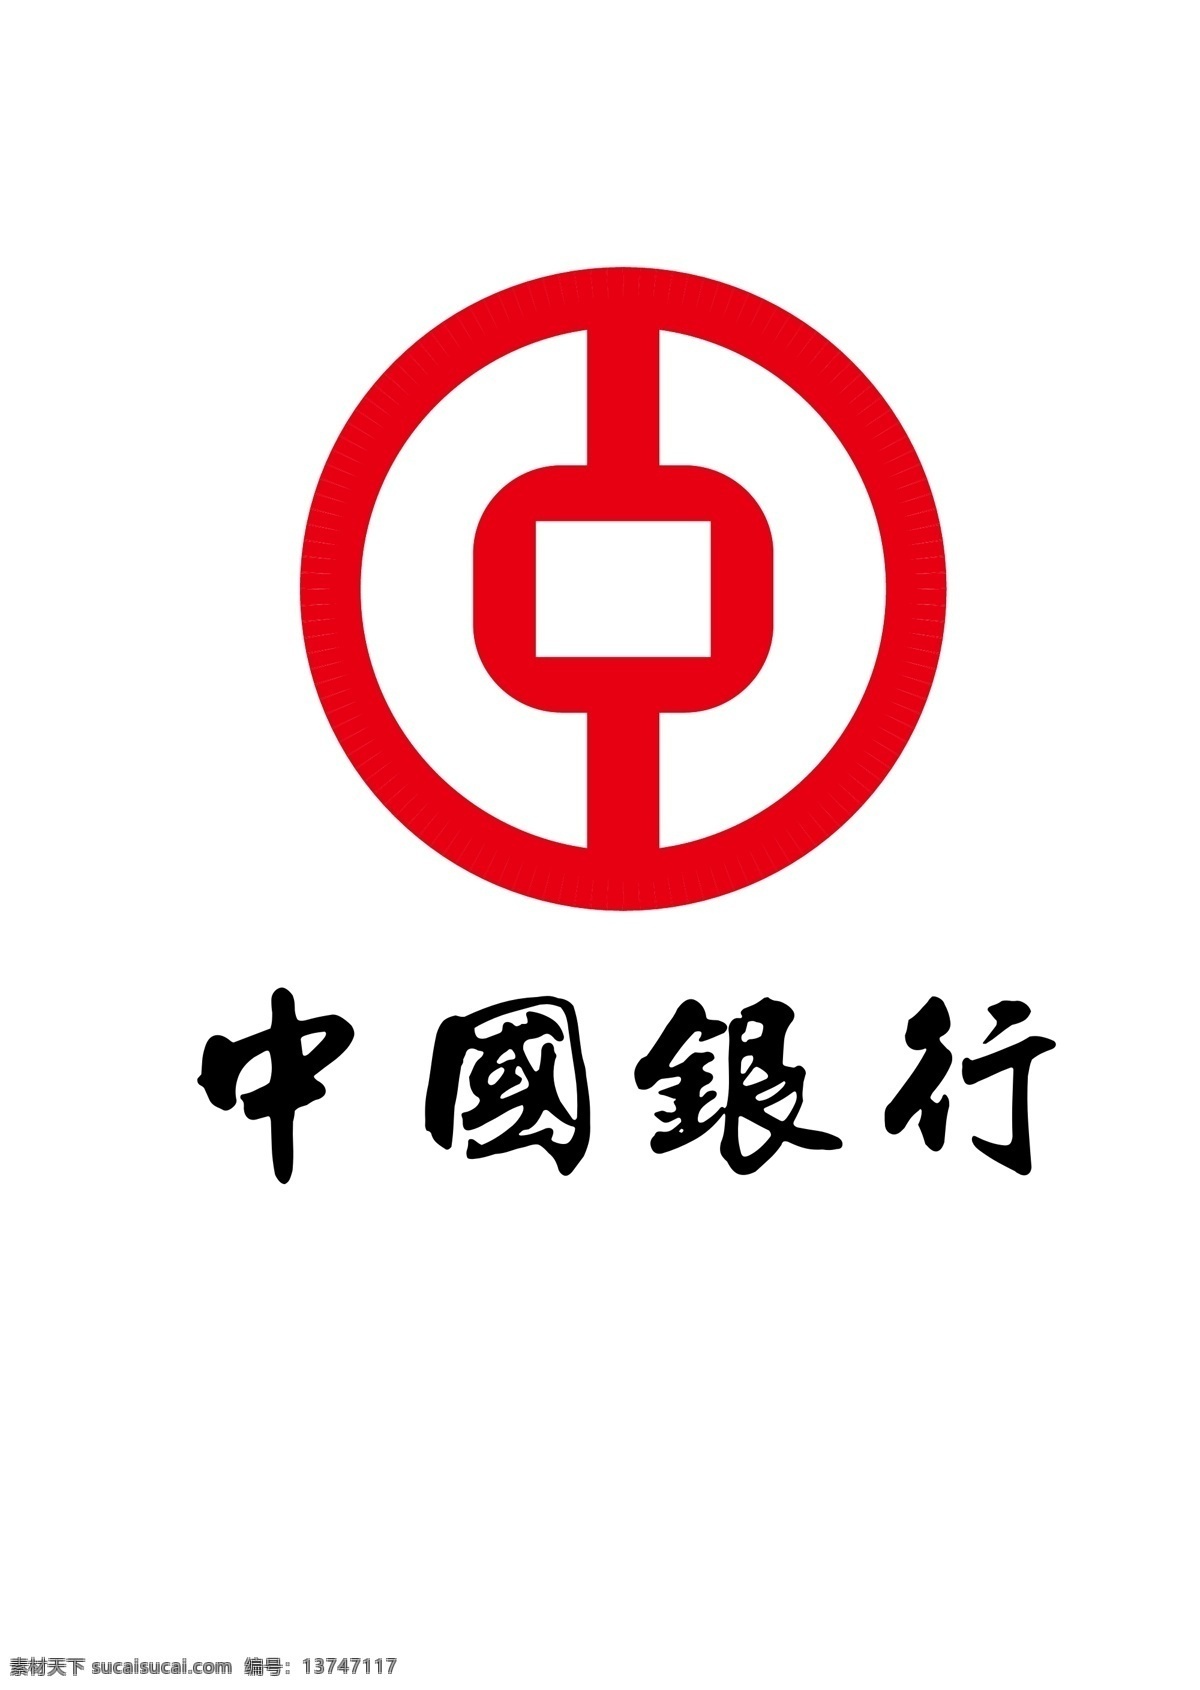 中国银行标志 银行标志 银行标识 银行logo 银行图标 银行商标 银行海报 银行小图标 中国银行 logo 平面 标志图标 公共标识标志